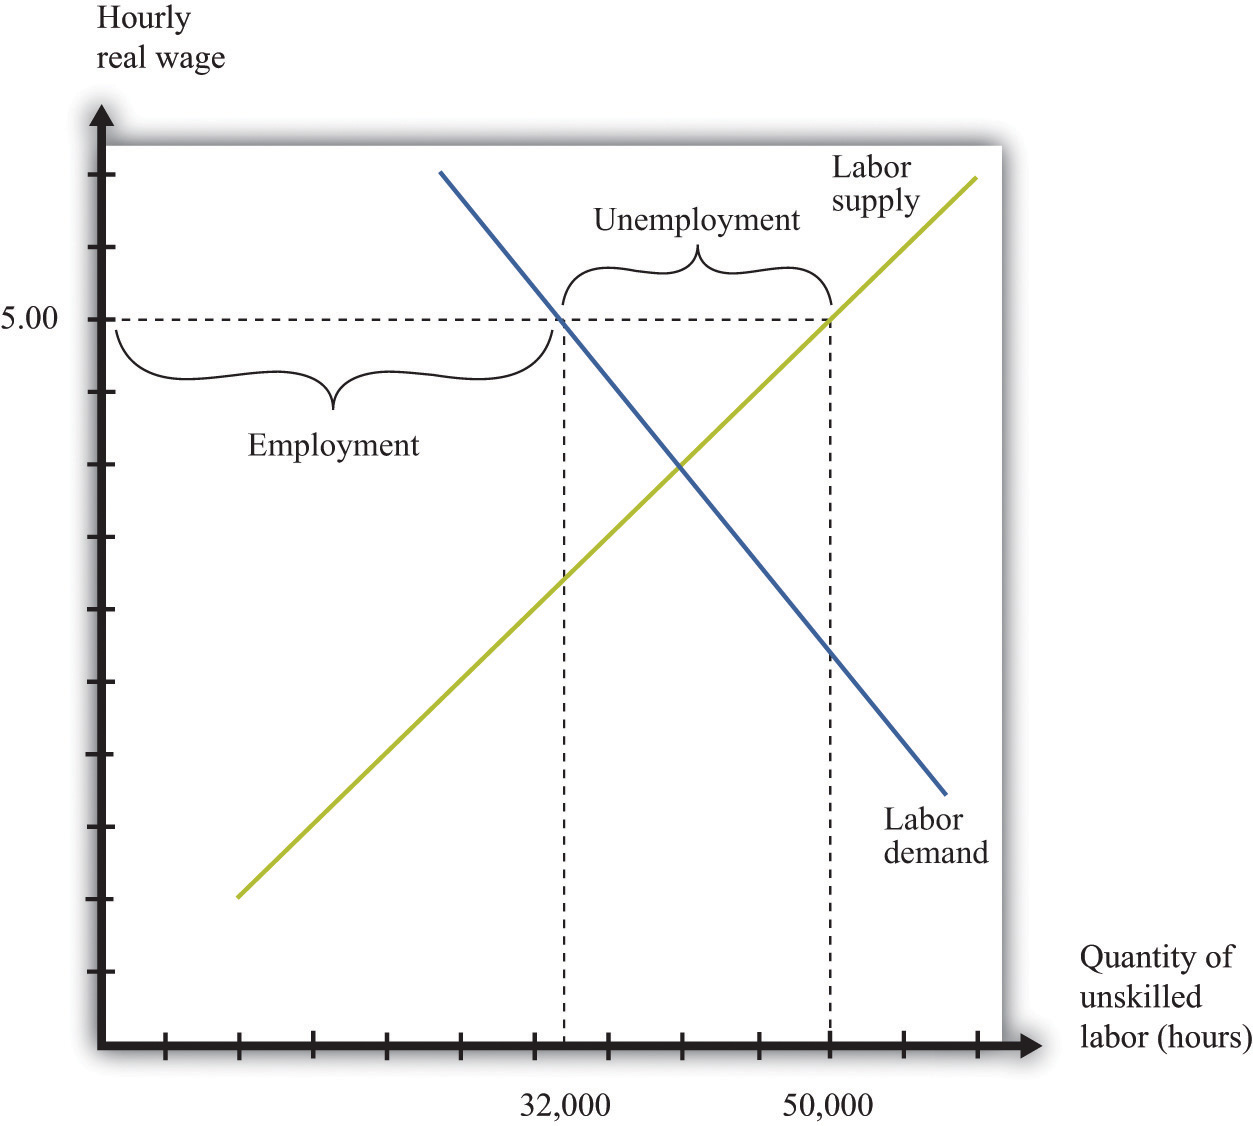 Minimum Wage Chart